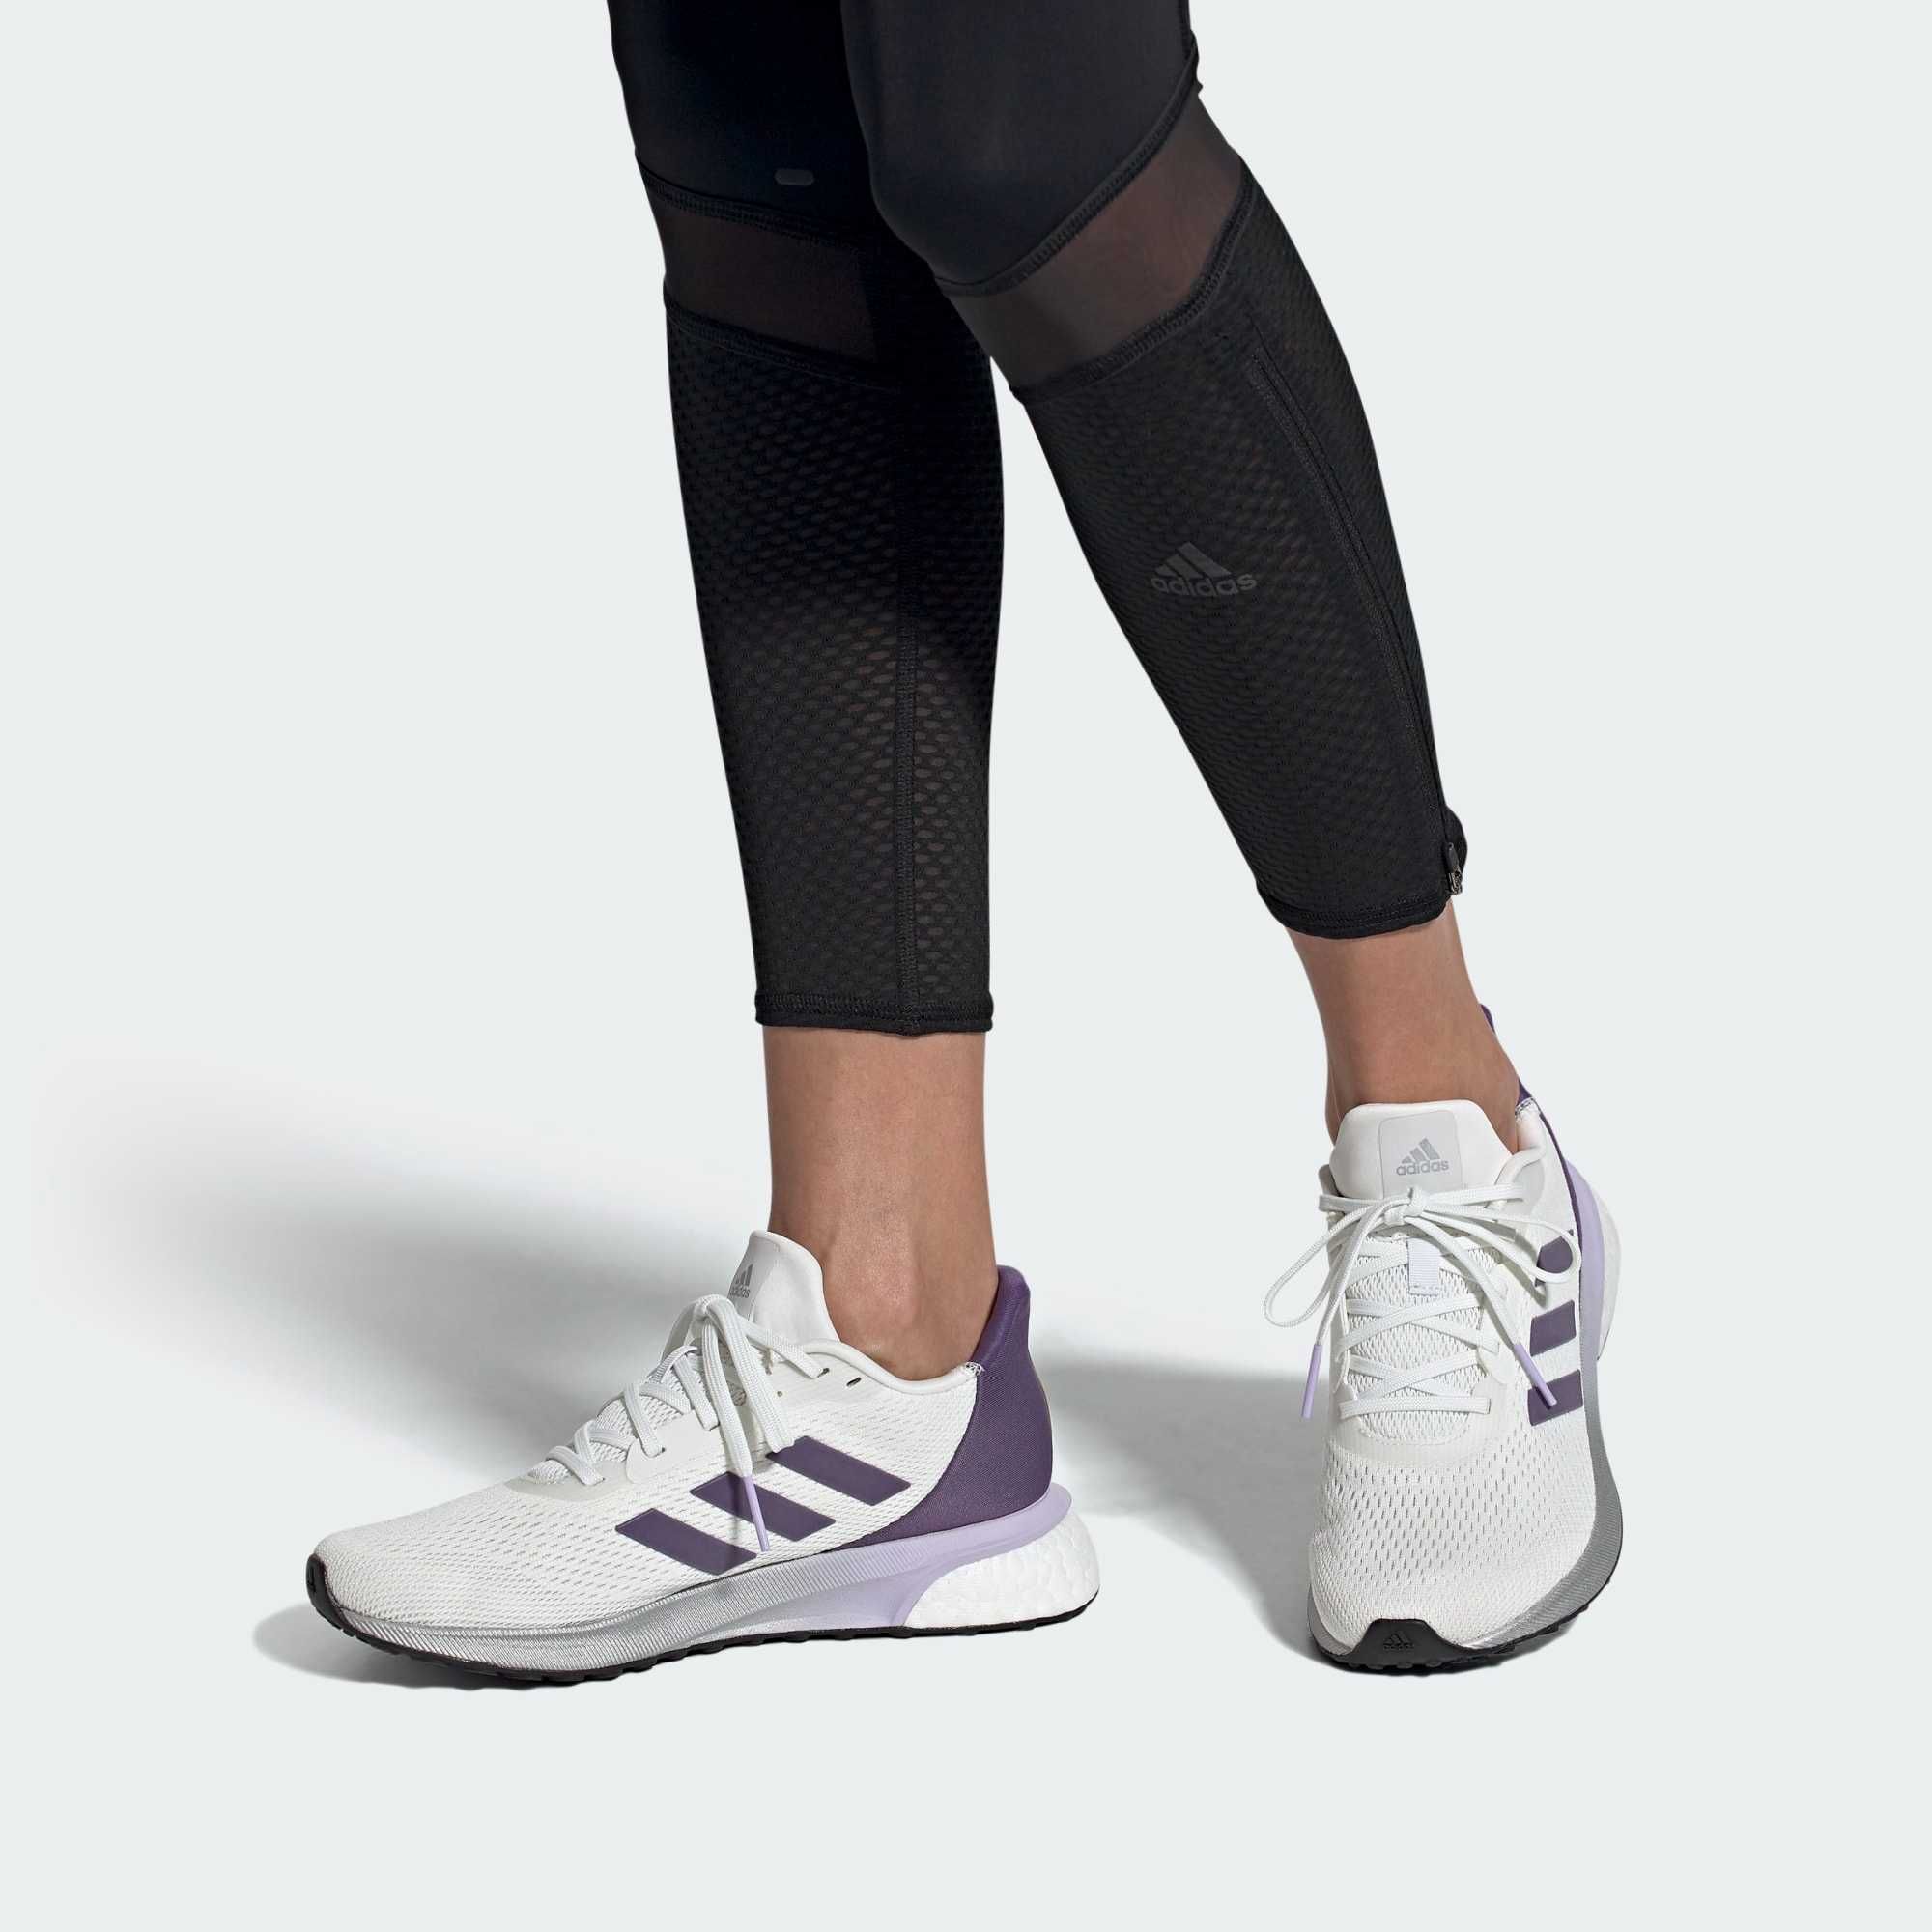 Жіночі кросівки Адідас для бігу, спорту, на кожен день ASTRARUN eh1529